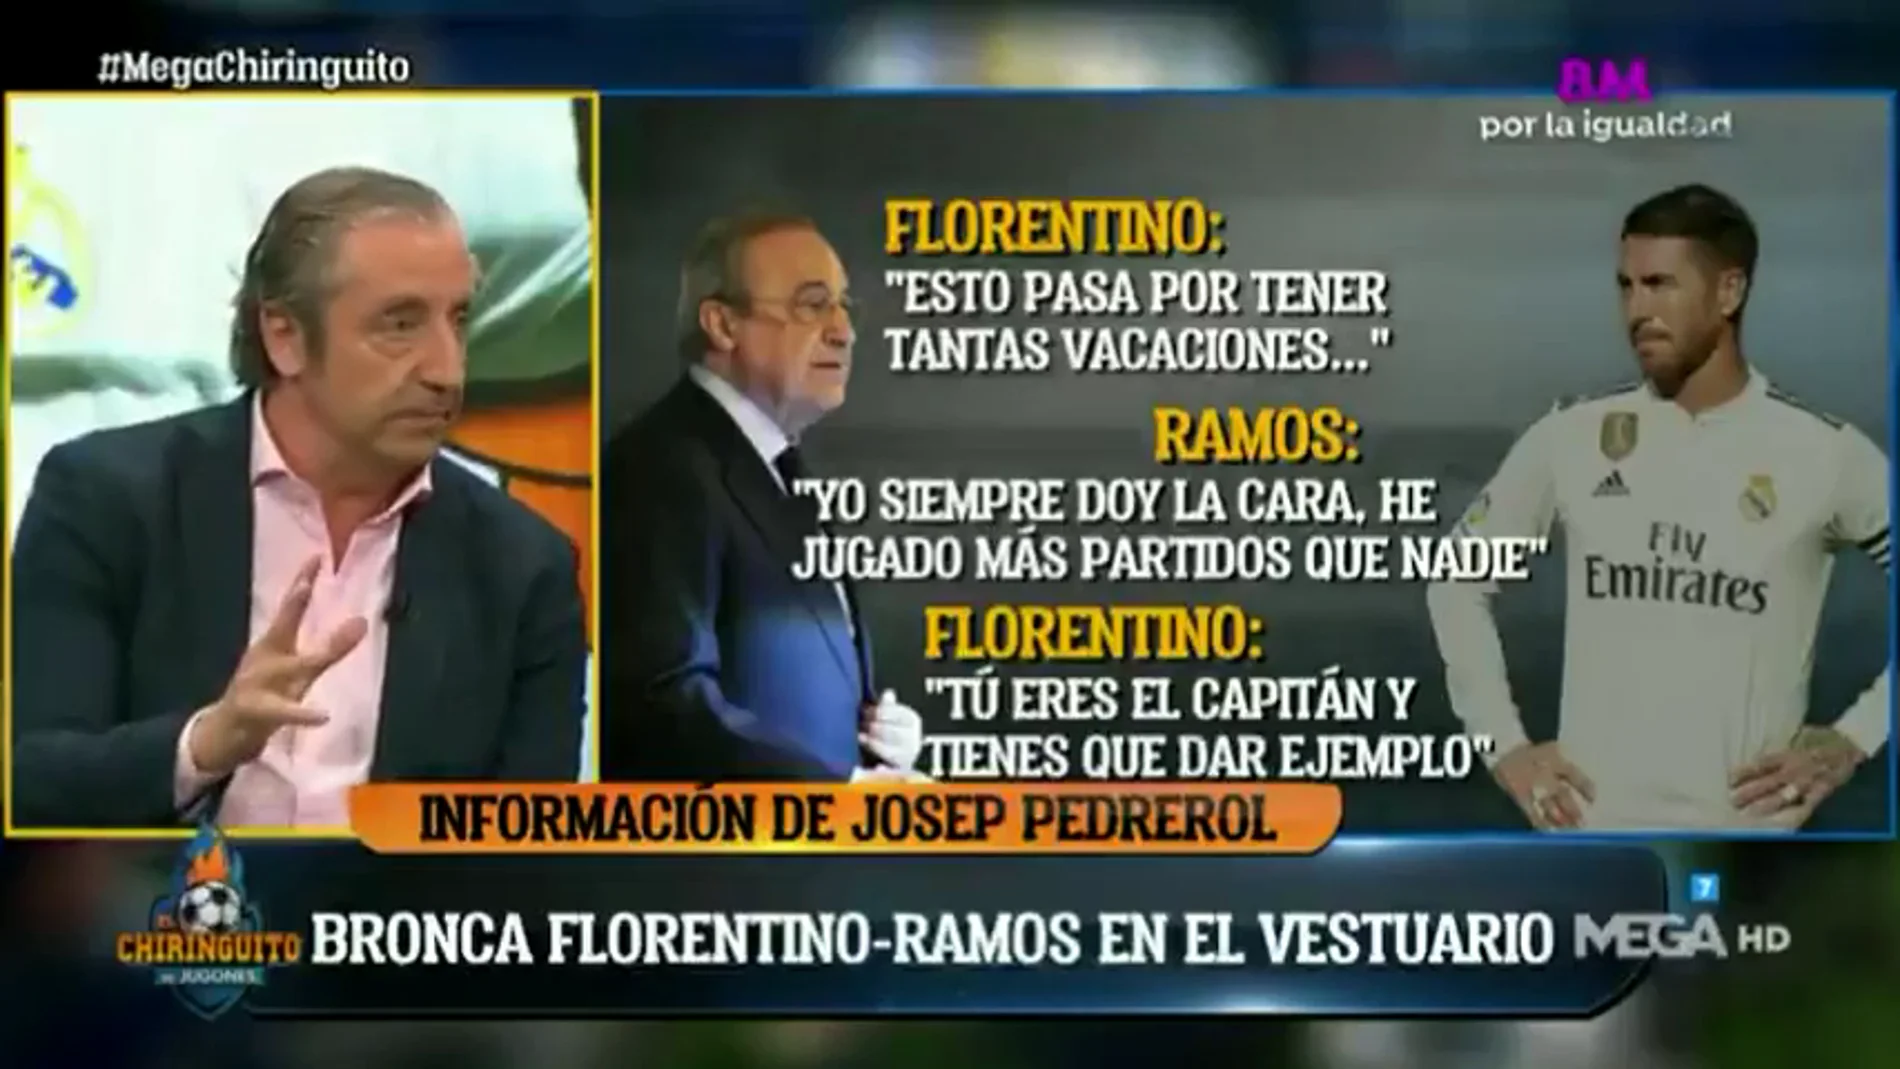 ¿Cómo fue la bronca entre Ramos y Florentino en el vestuario? Josep Pedrerol desvela los detalles